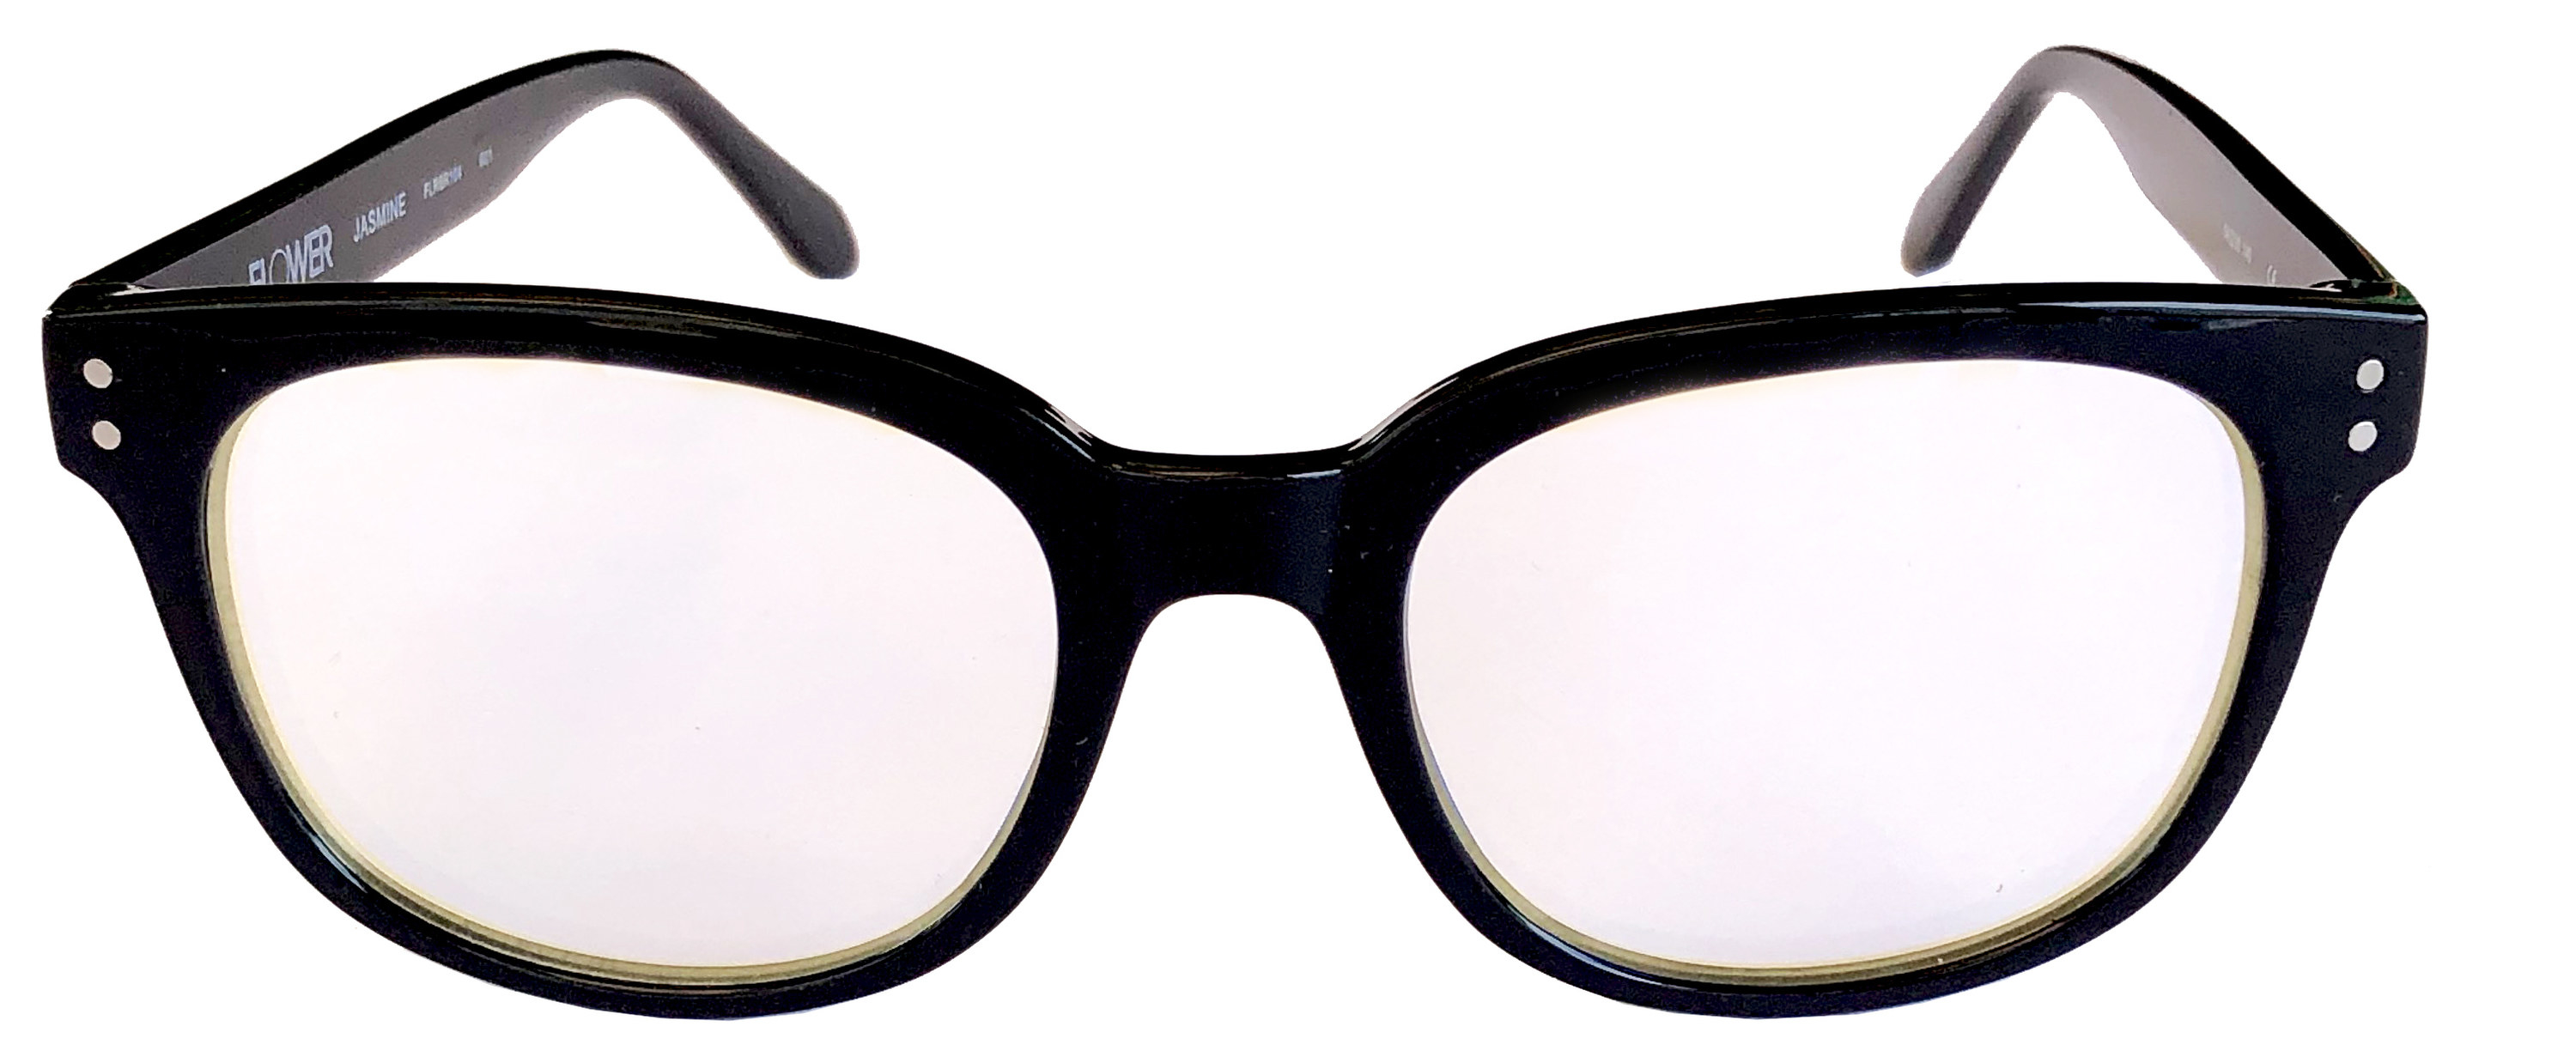 A pair of black framed glasses